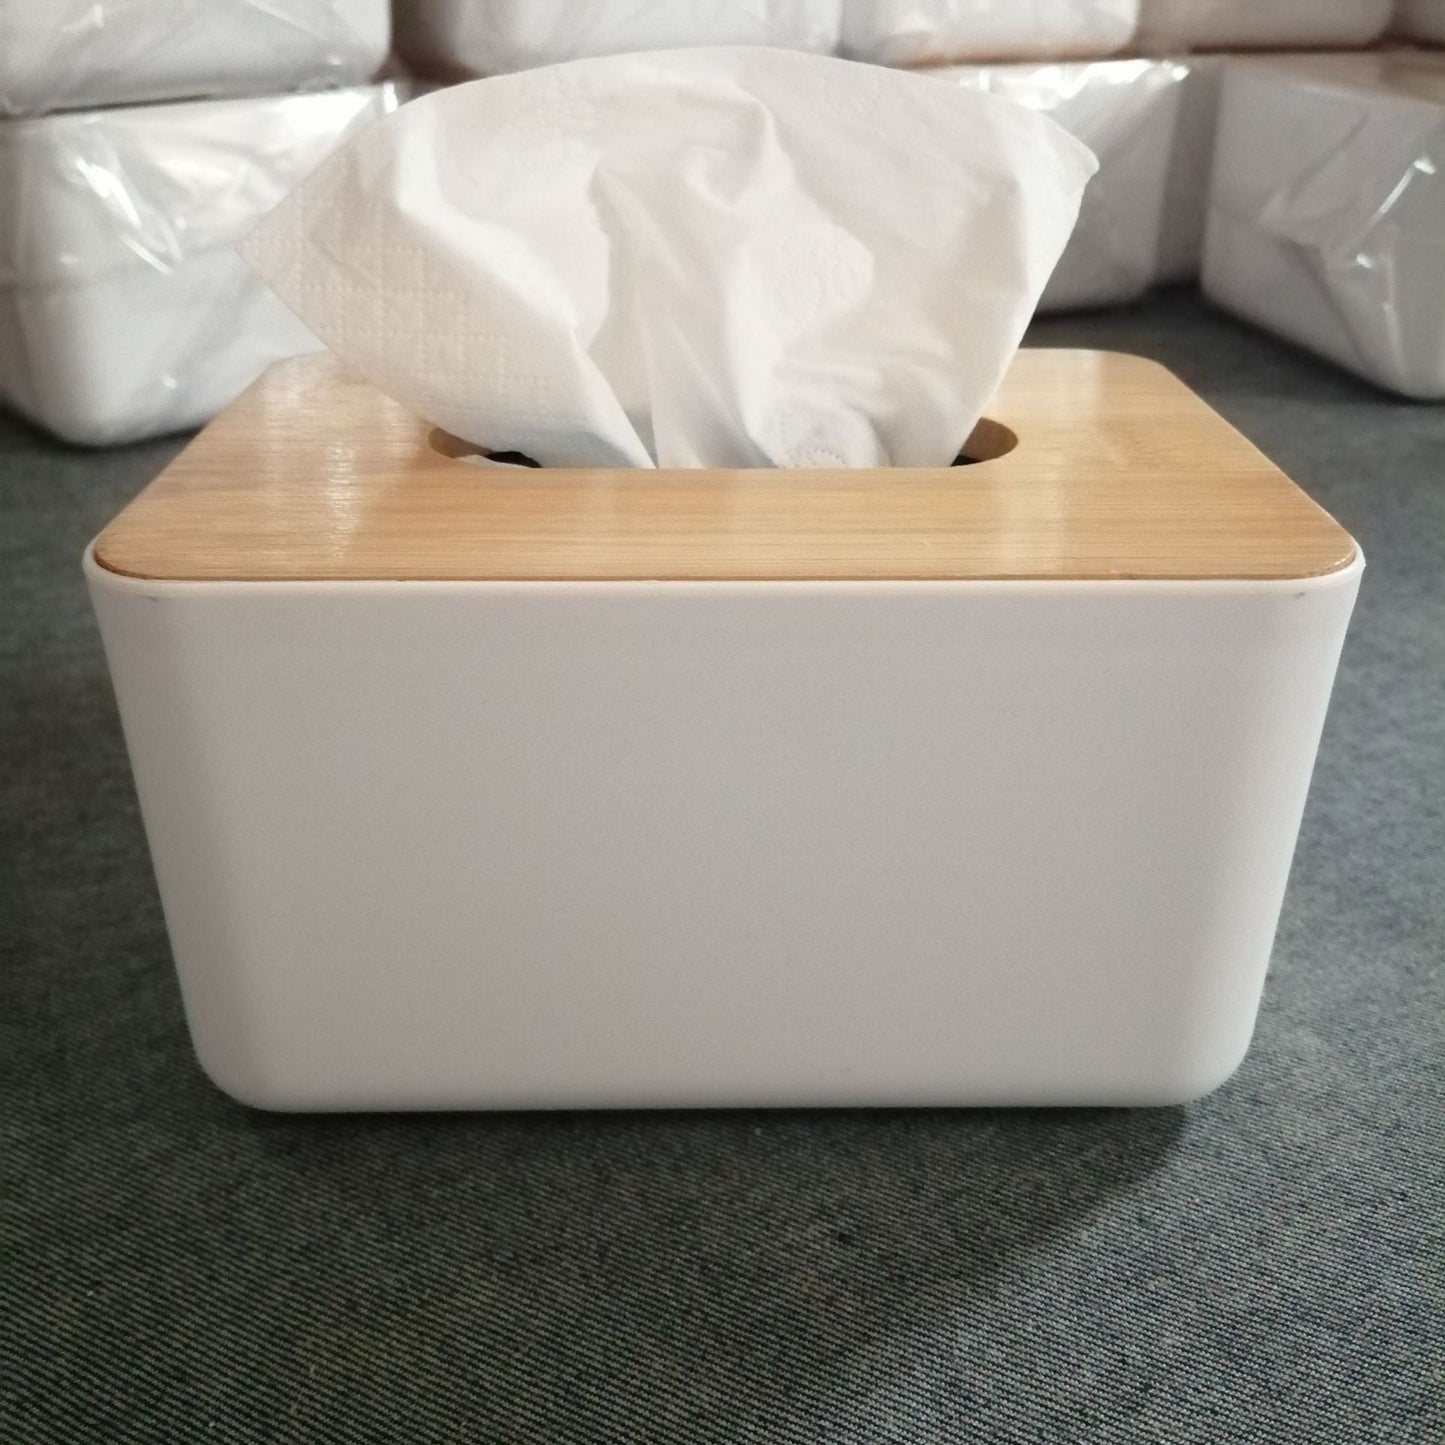 Modish White Tissue Box